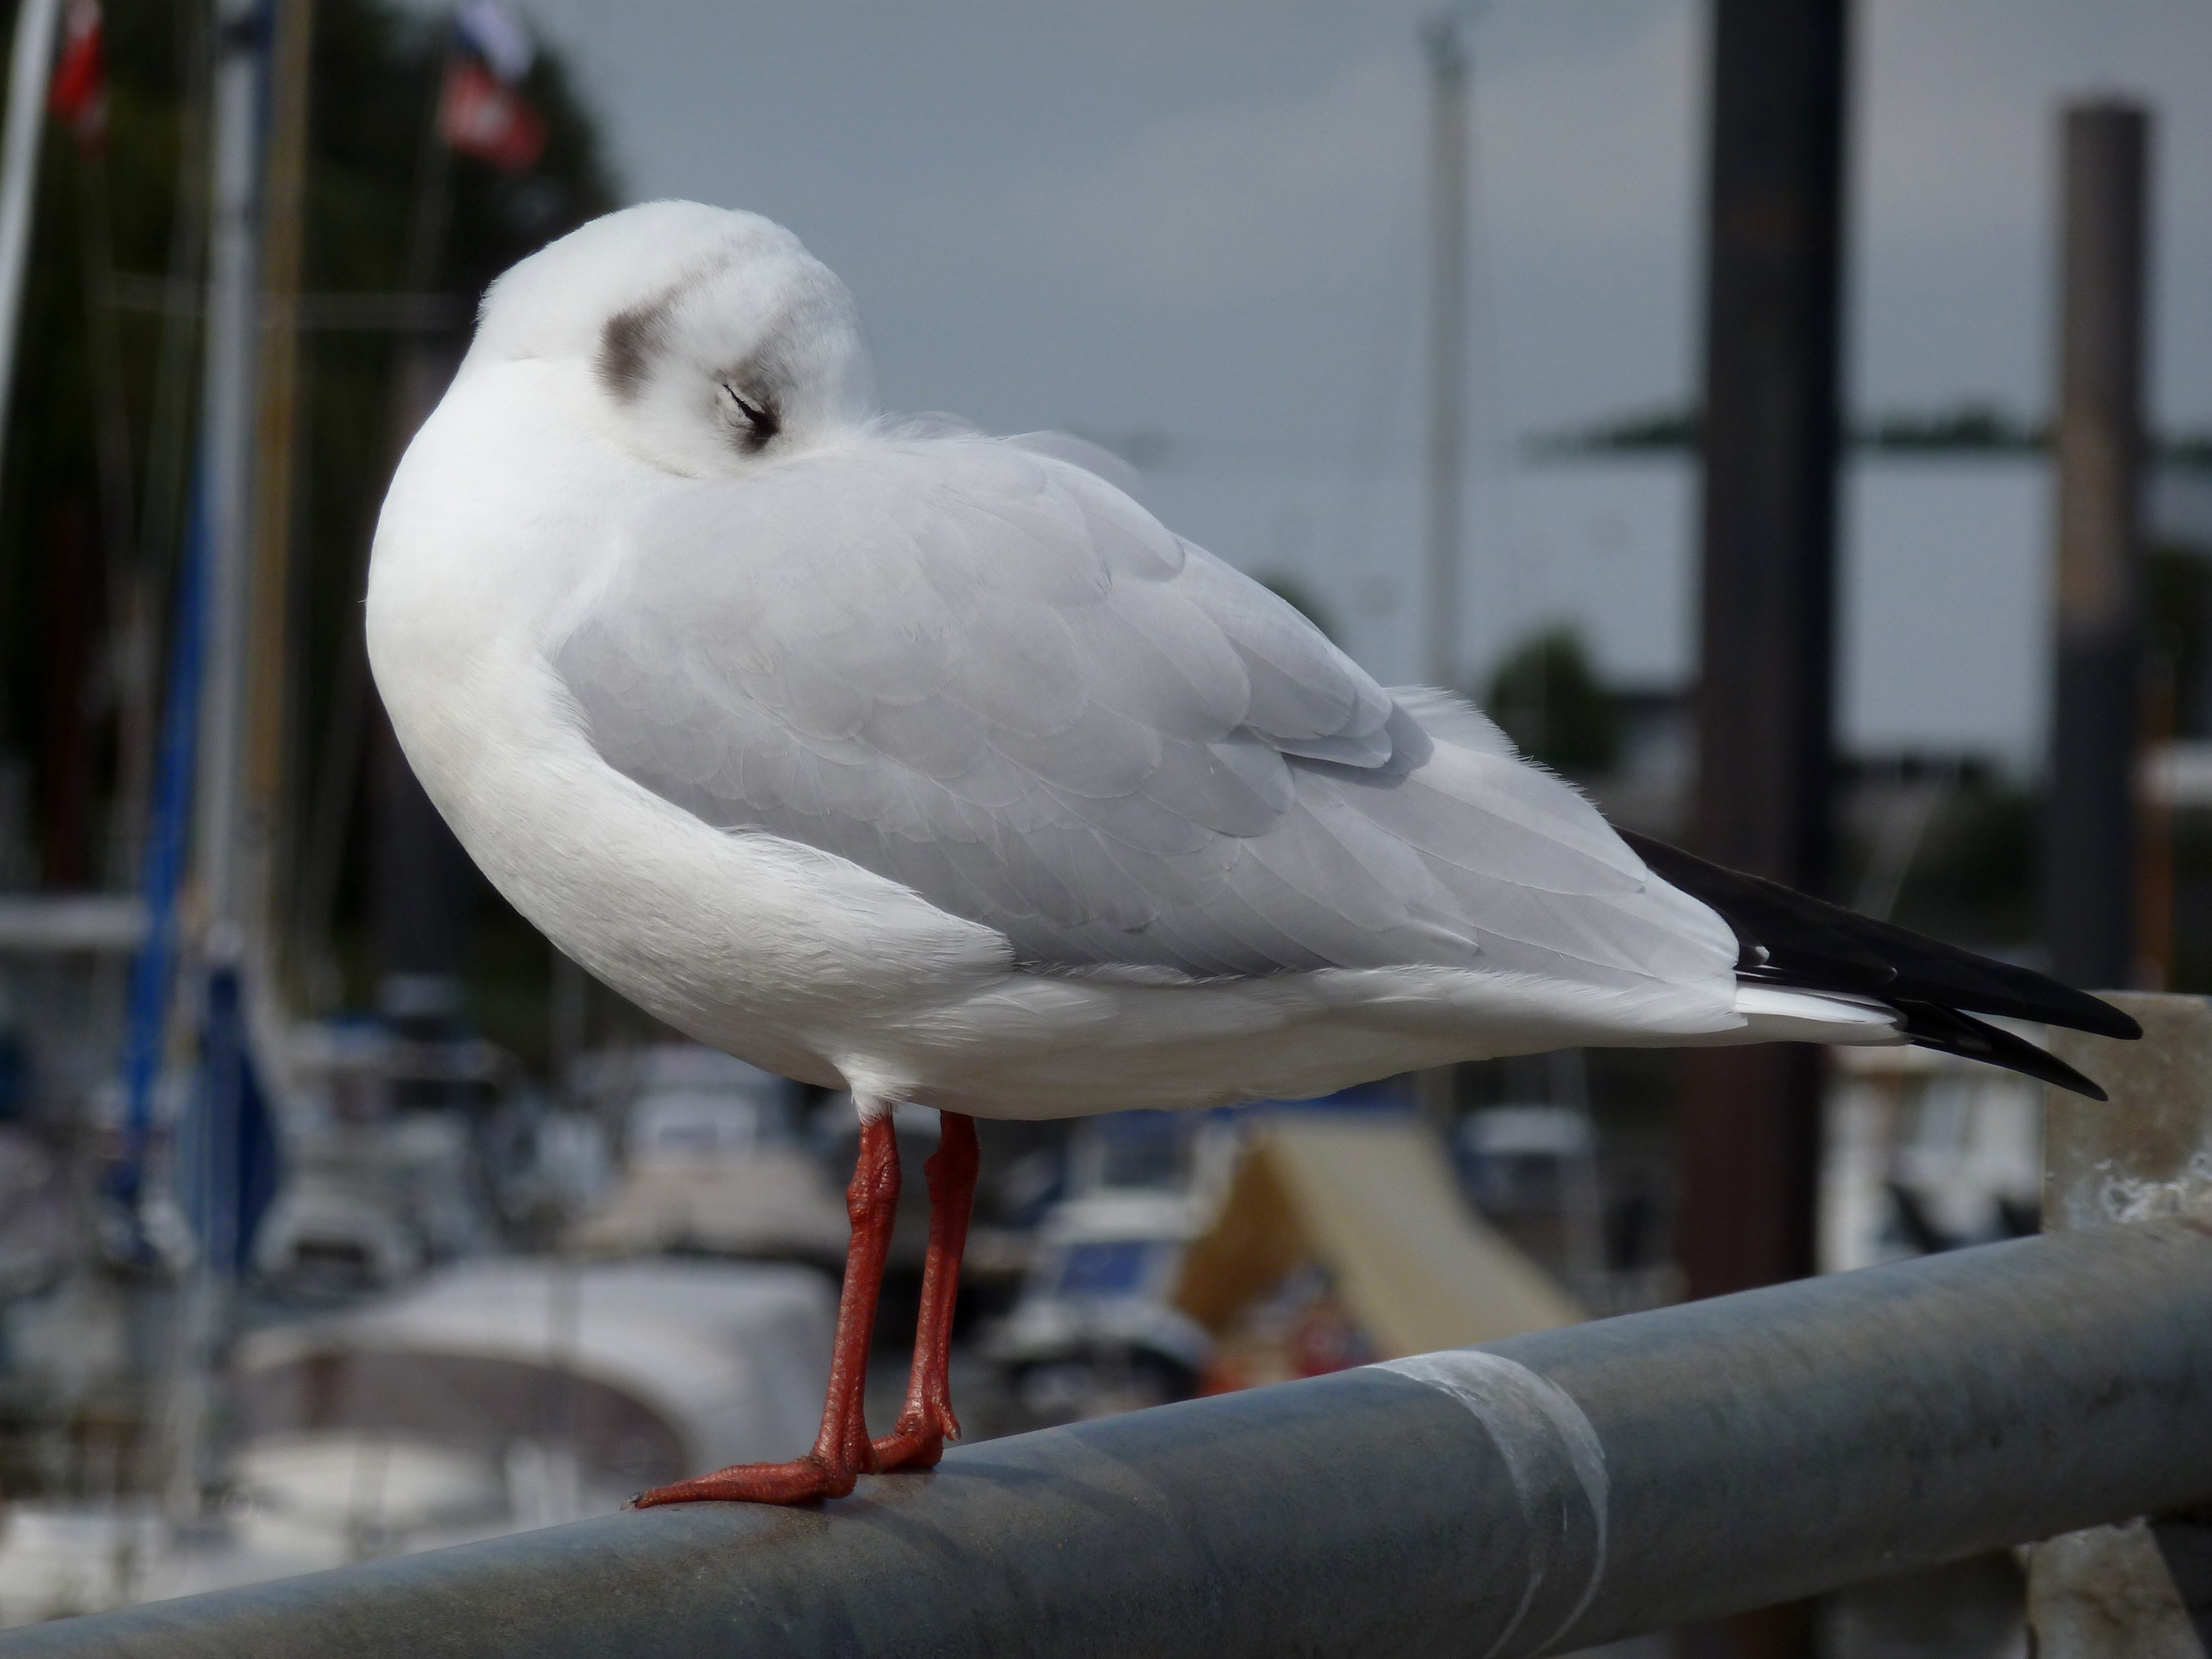 white bird